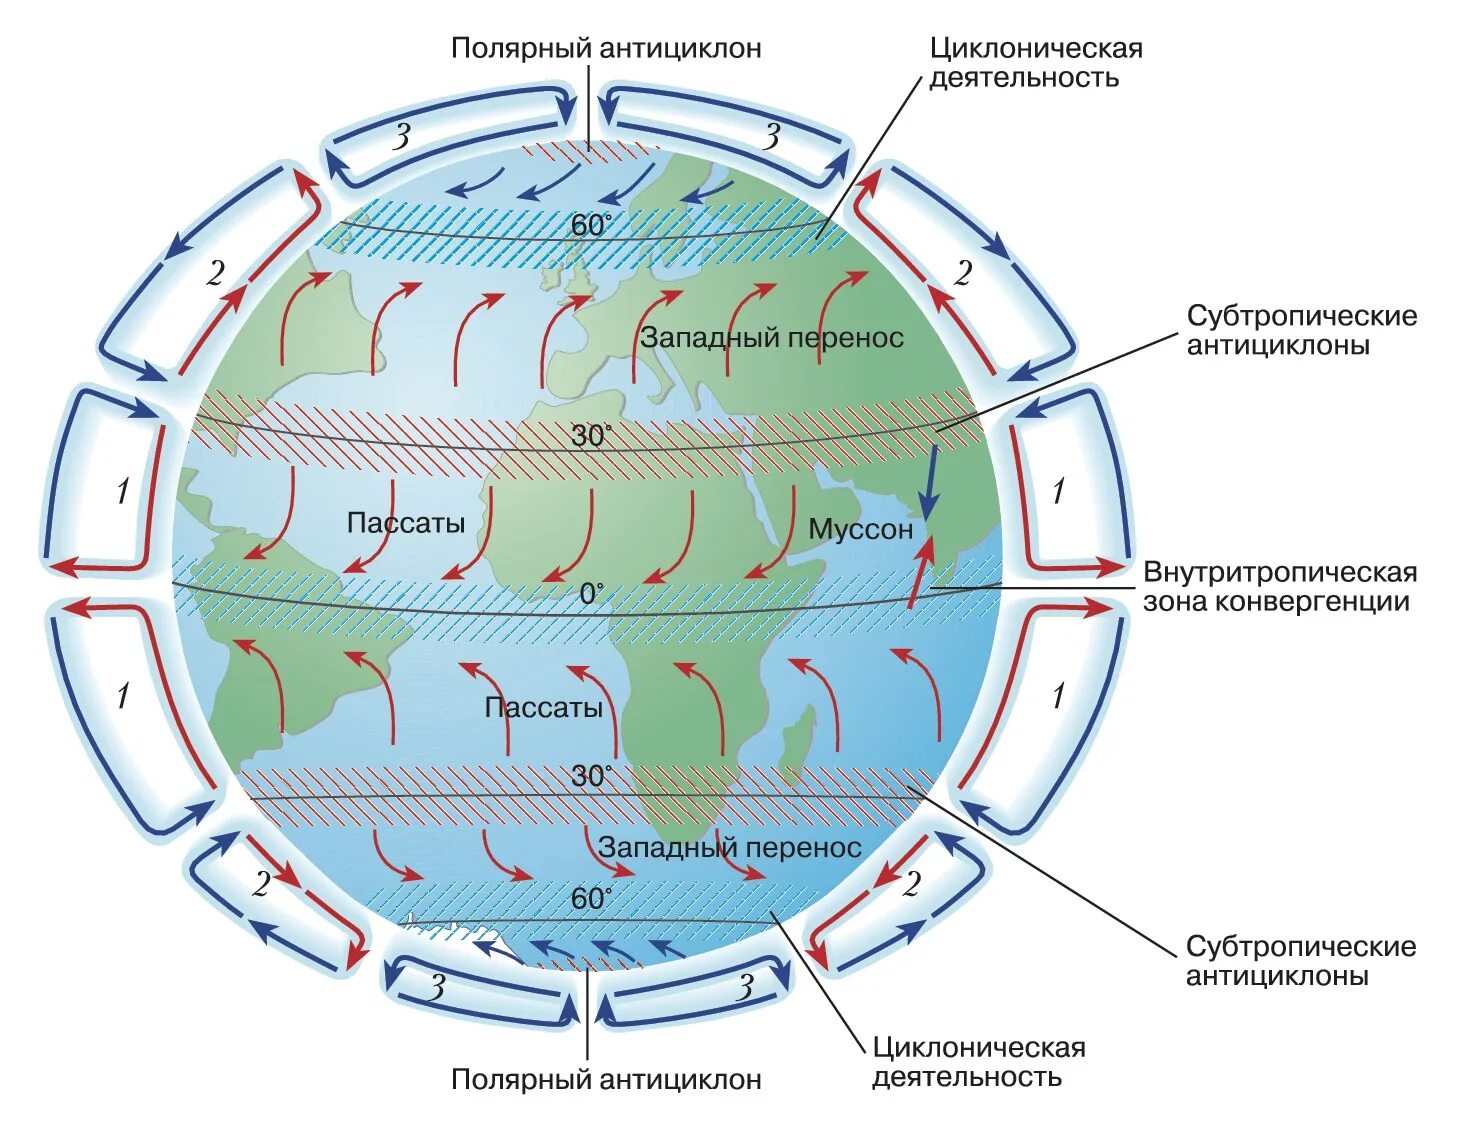 Пассаты южного полушария имеют направление. Общая циркуляция атмосферы карта. Схема глобальной циркуляции атмосферы. Схема общей циркуляции атмосферы на земле. Общая циркуляция атмосферы (атмосферная циркуляция).